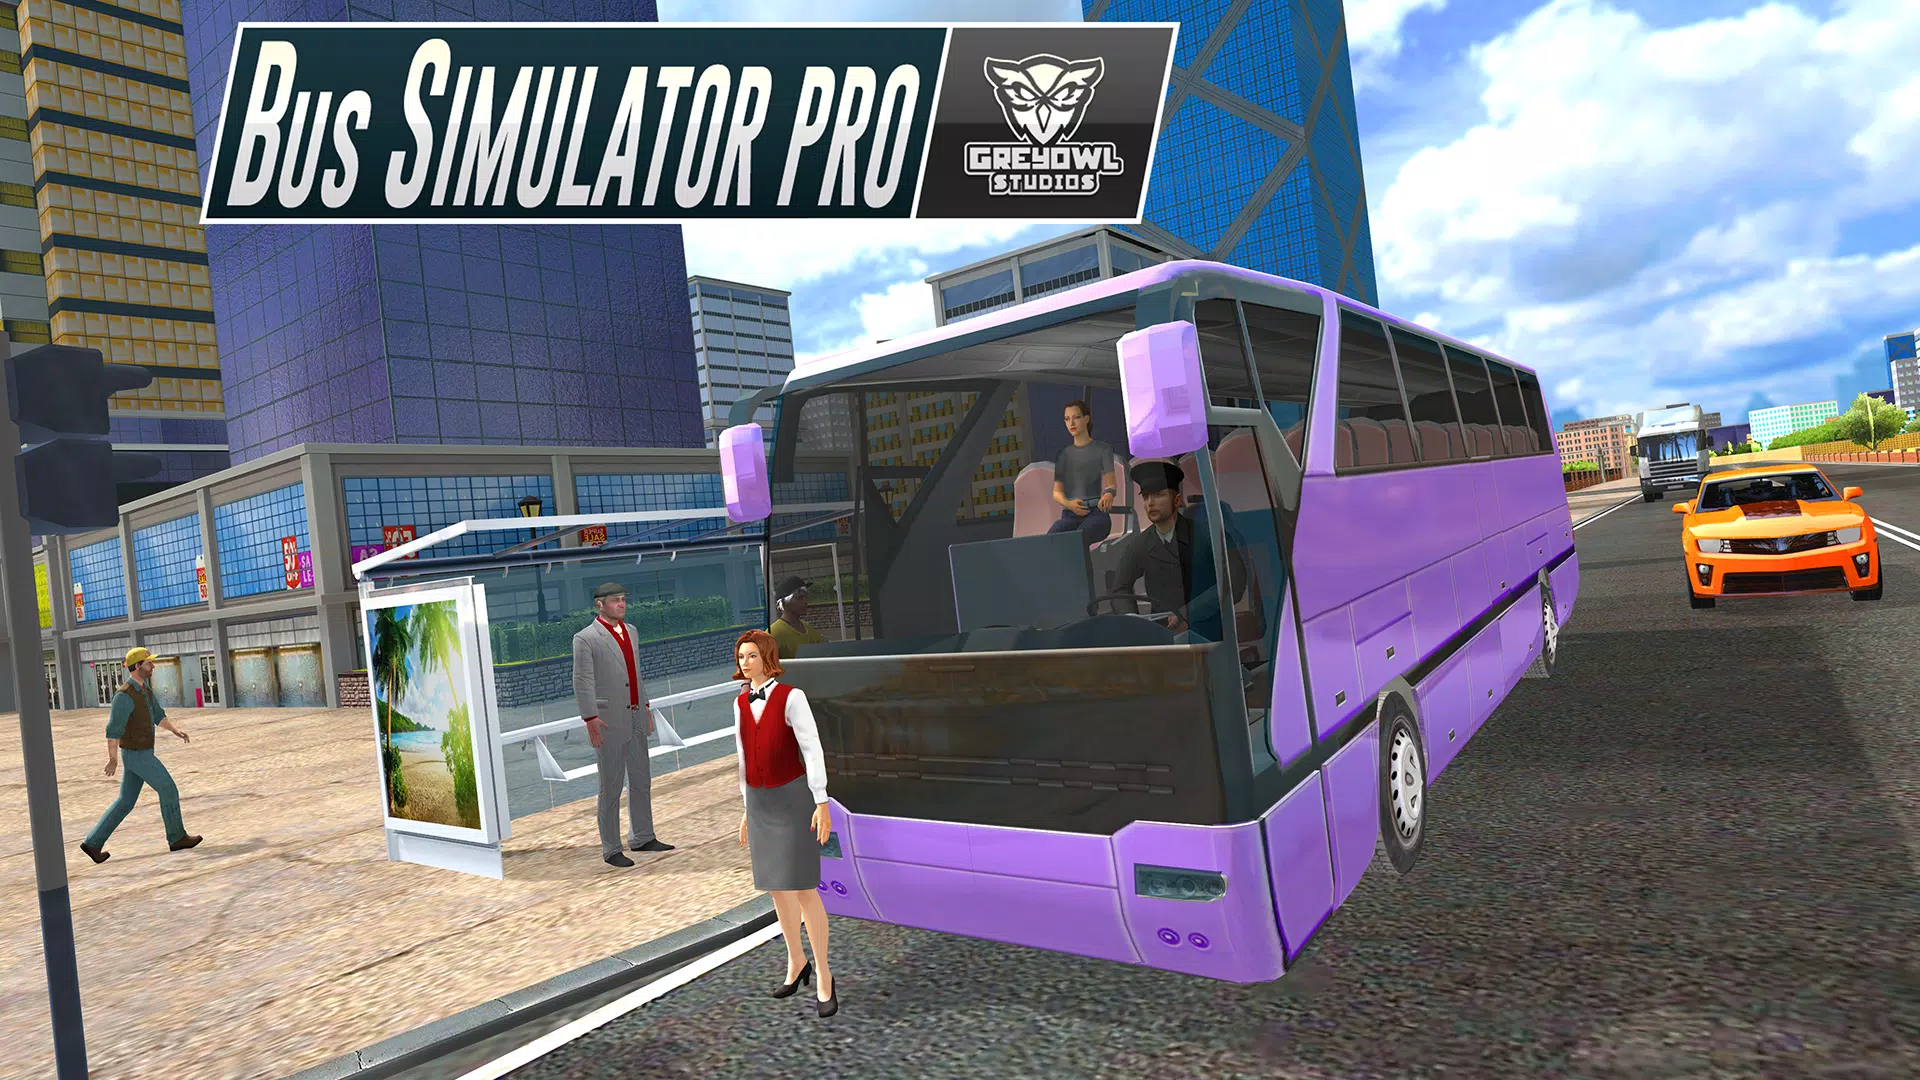 Baixe o Jogo de ônibus 3D para dirigir MOD APK v2.97.1 para Android